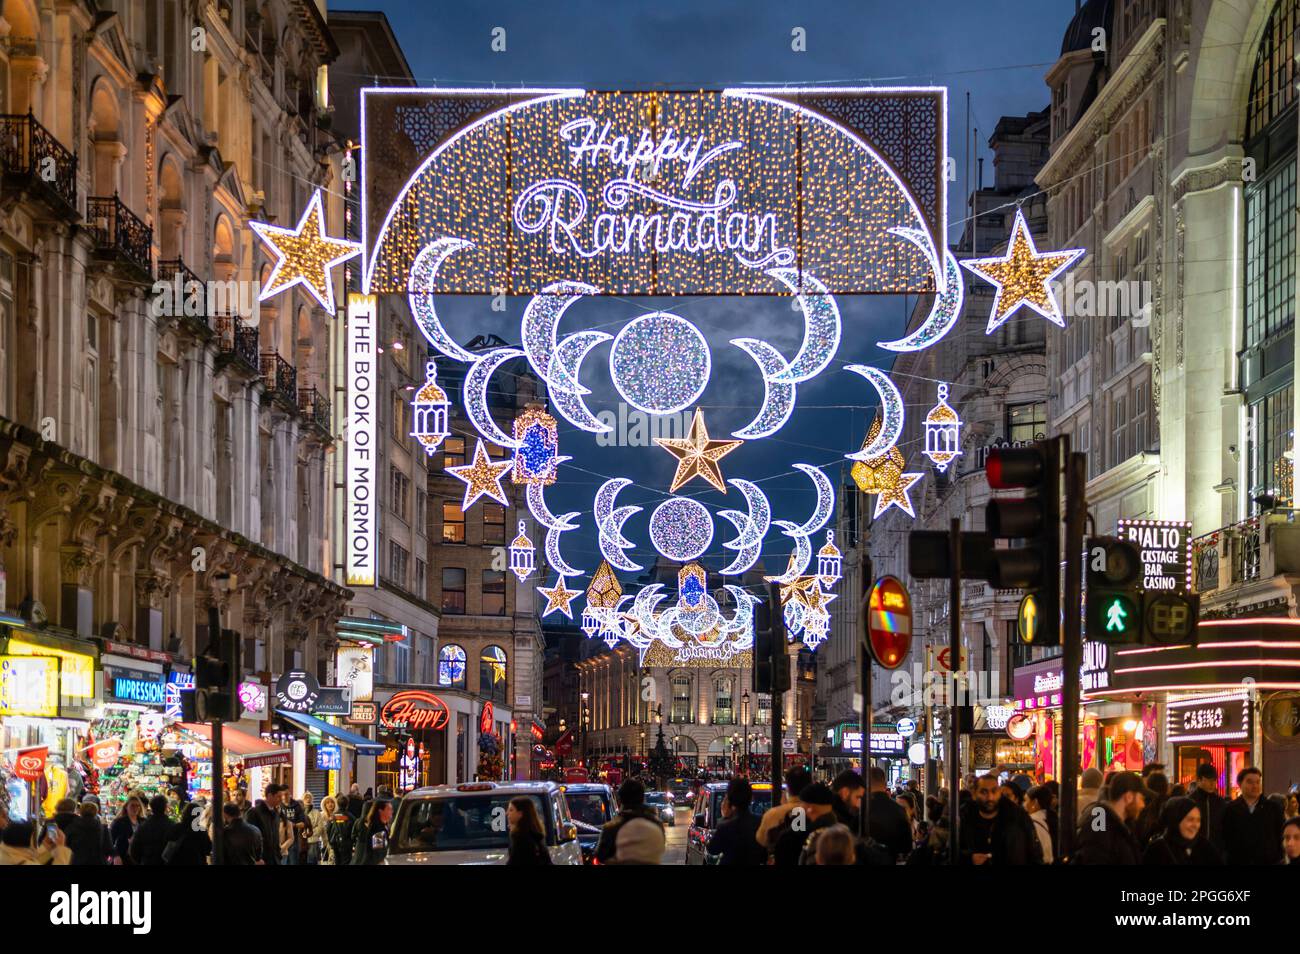 Die Ramadan Lights werden zum ersten Mal im Zentrum von London, London, Großbritannien, ausgestellt Stockfoto